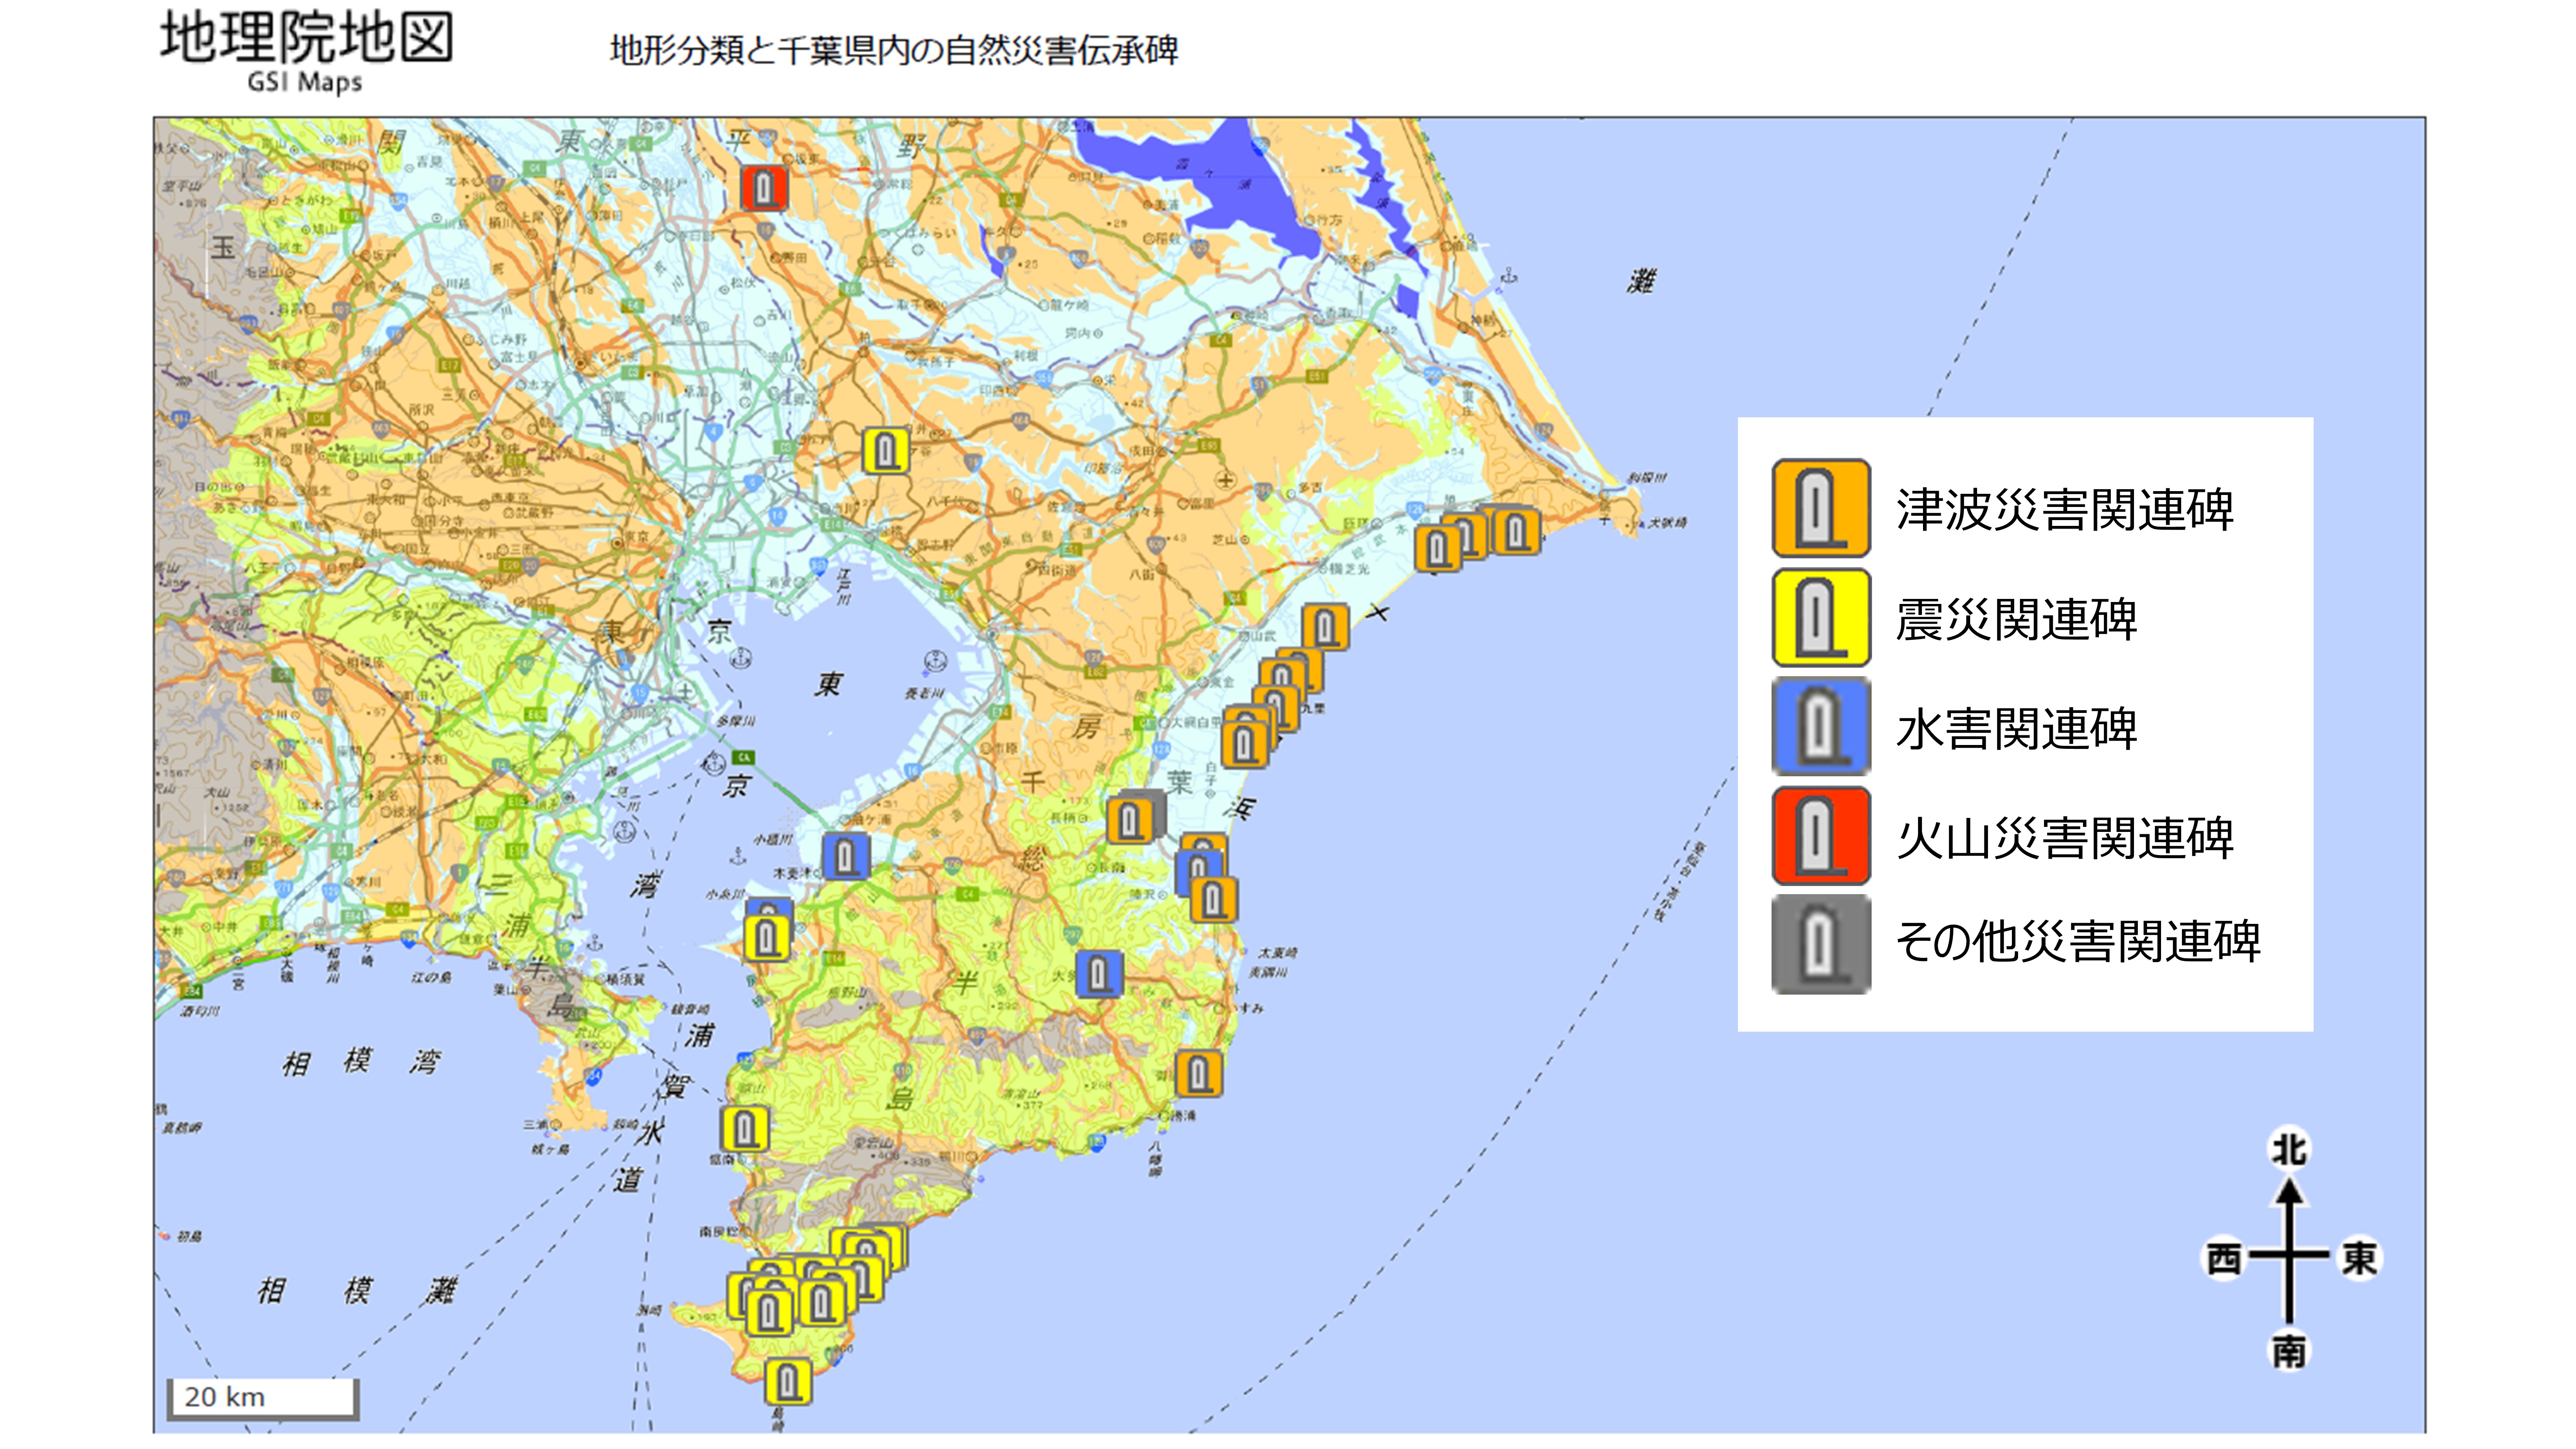 地形分類と災害種別ごとに色分けした千葉県内の自然災害伝承碑を重ねた地図